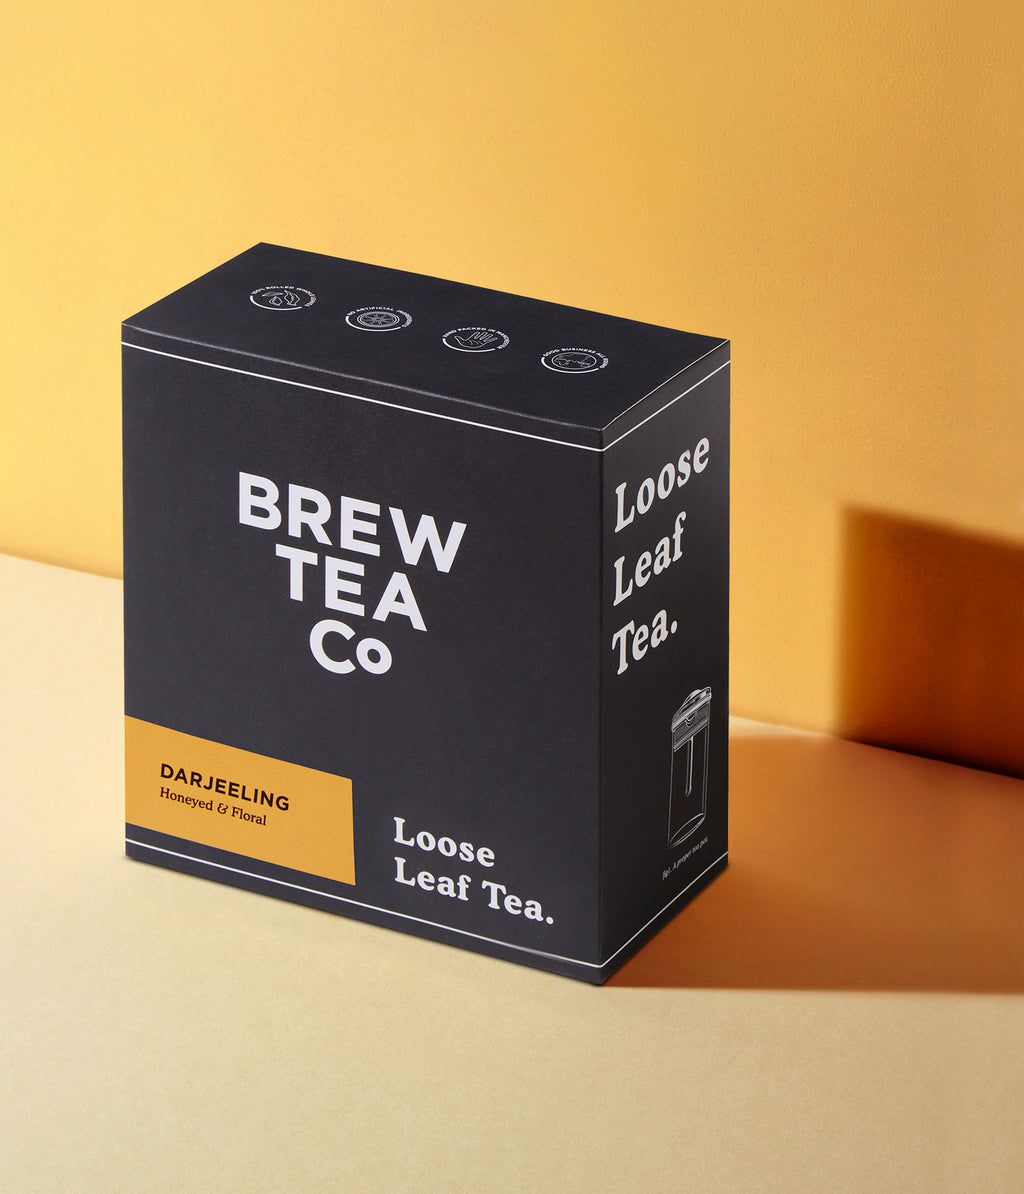 Darjeeling - Loose Leaf Tea